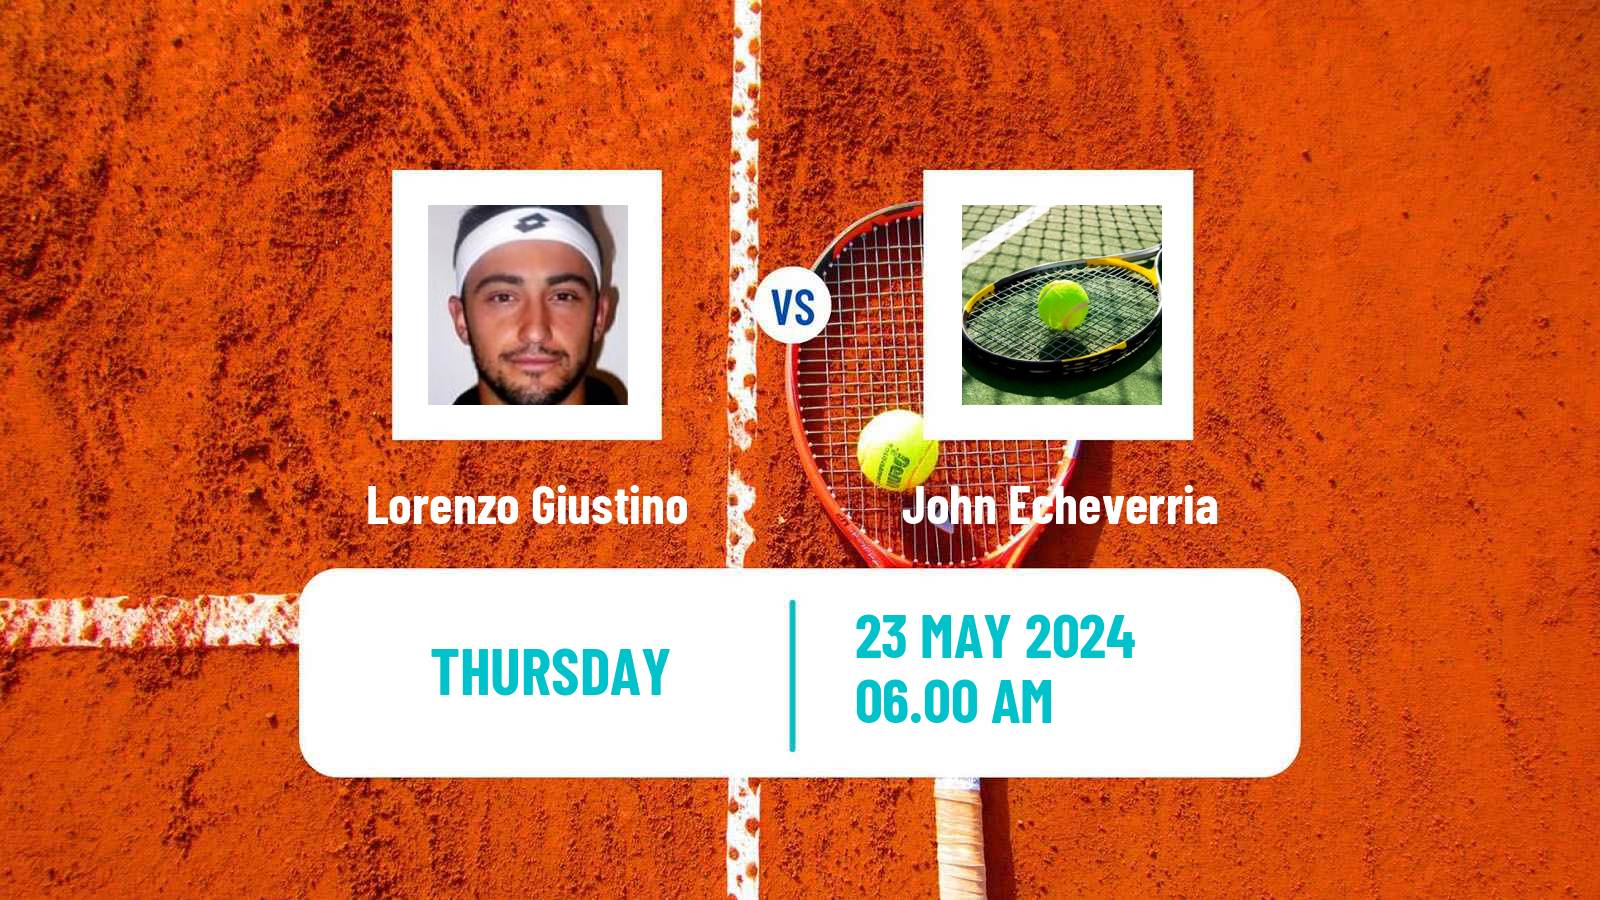 Tennis ITF M25 Mataro Men Lorenzo Giustino - John Echeverria